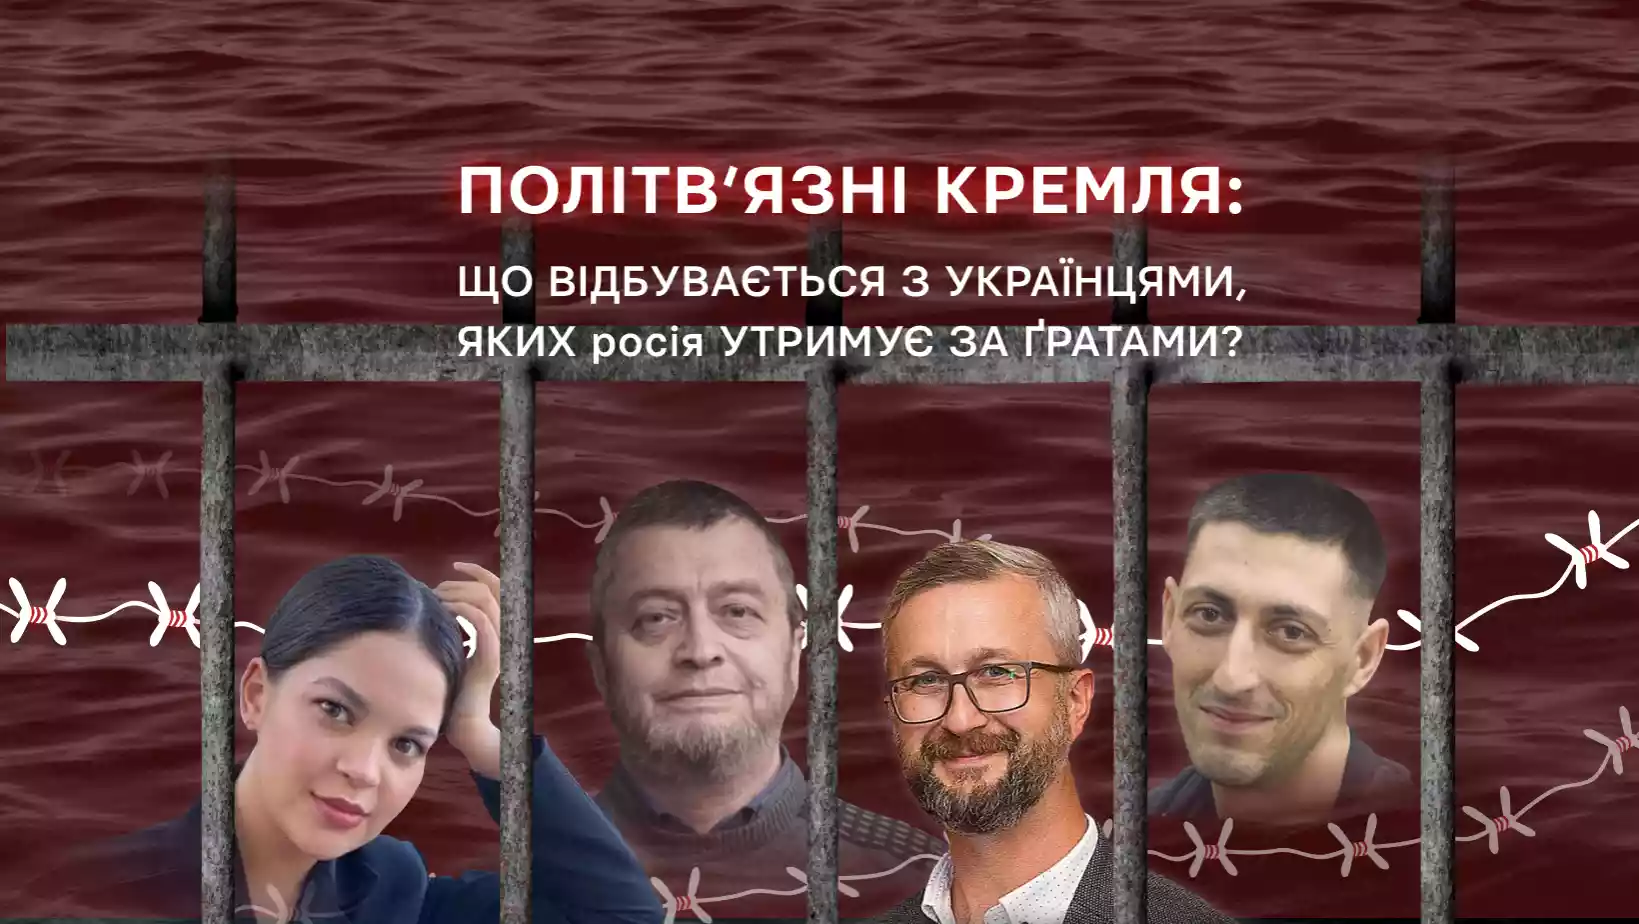 12 січня — пресконференція «Політв’язні Кремля: що відбувається з українцями, яких Росія утримує за ґратами?»